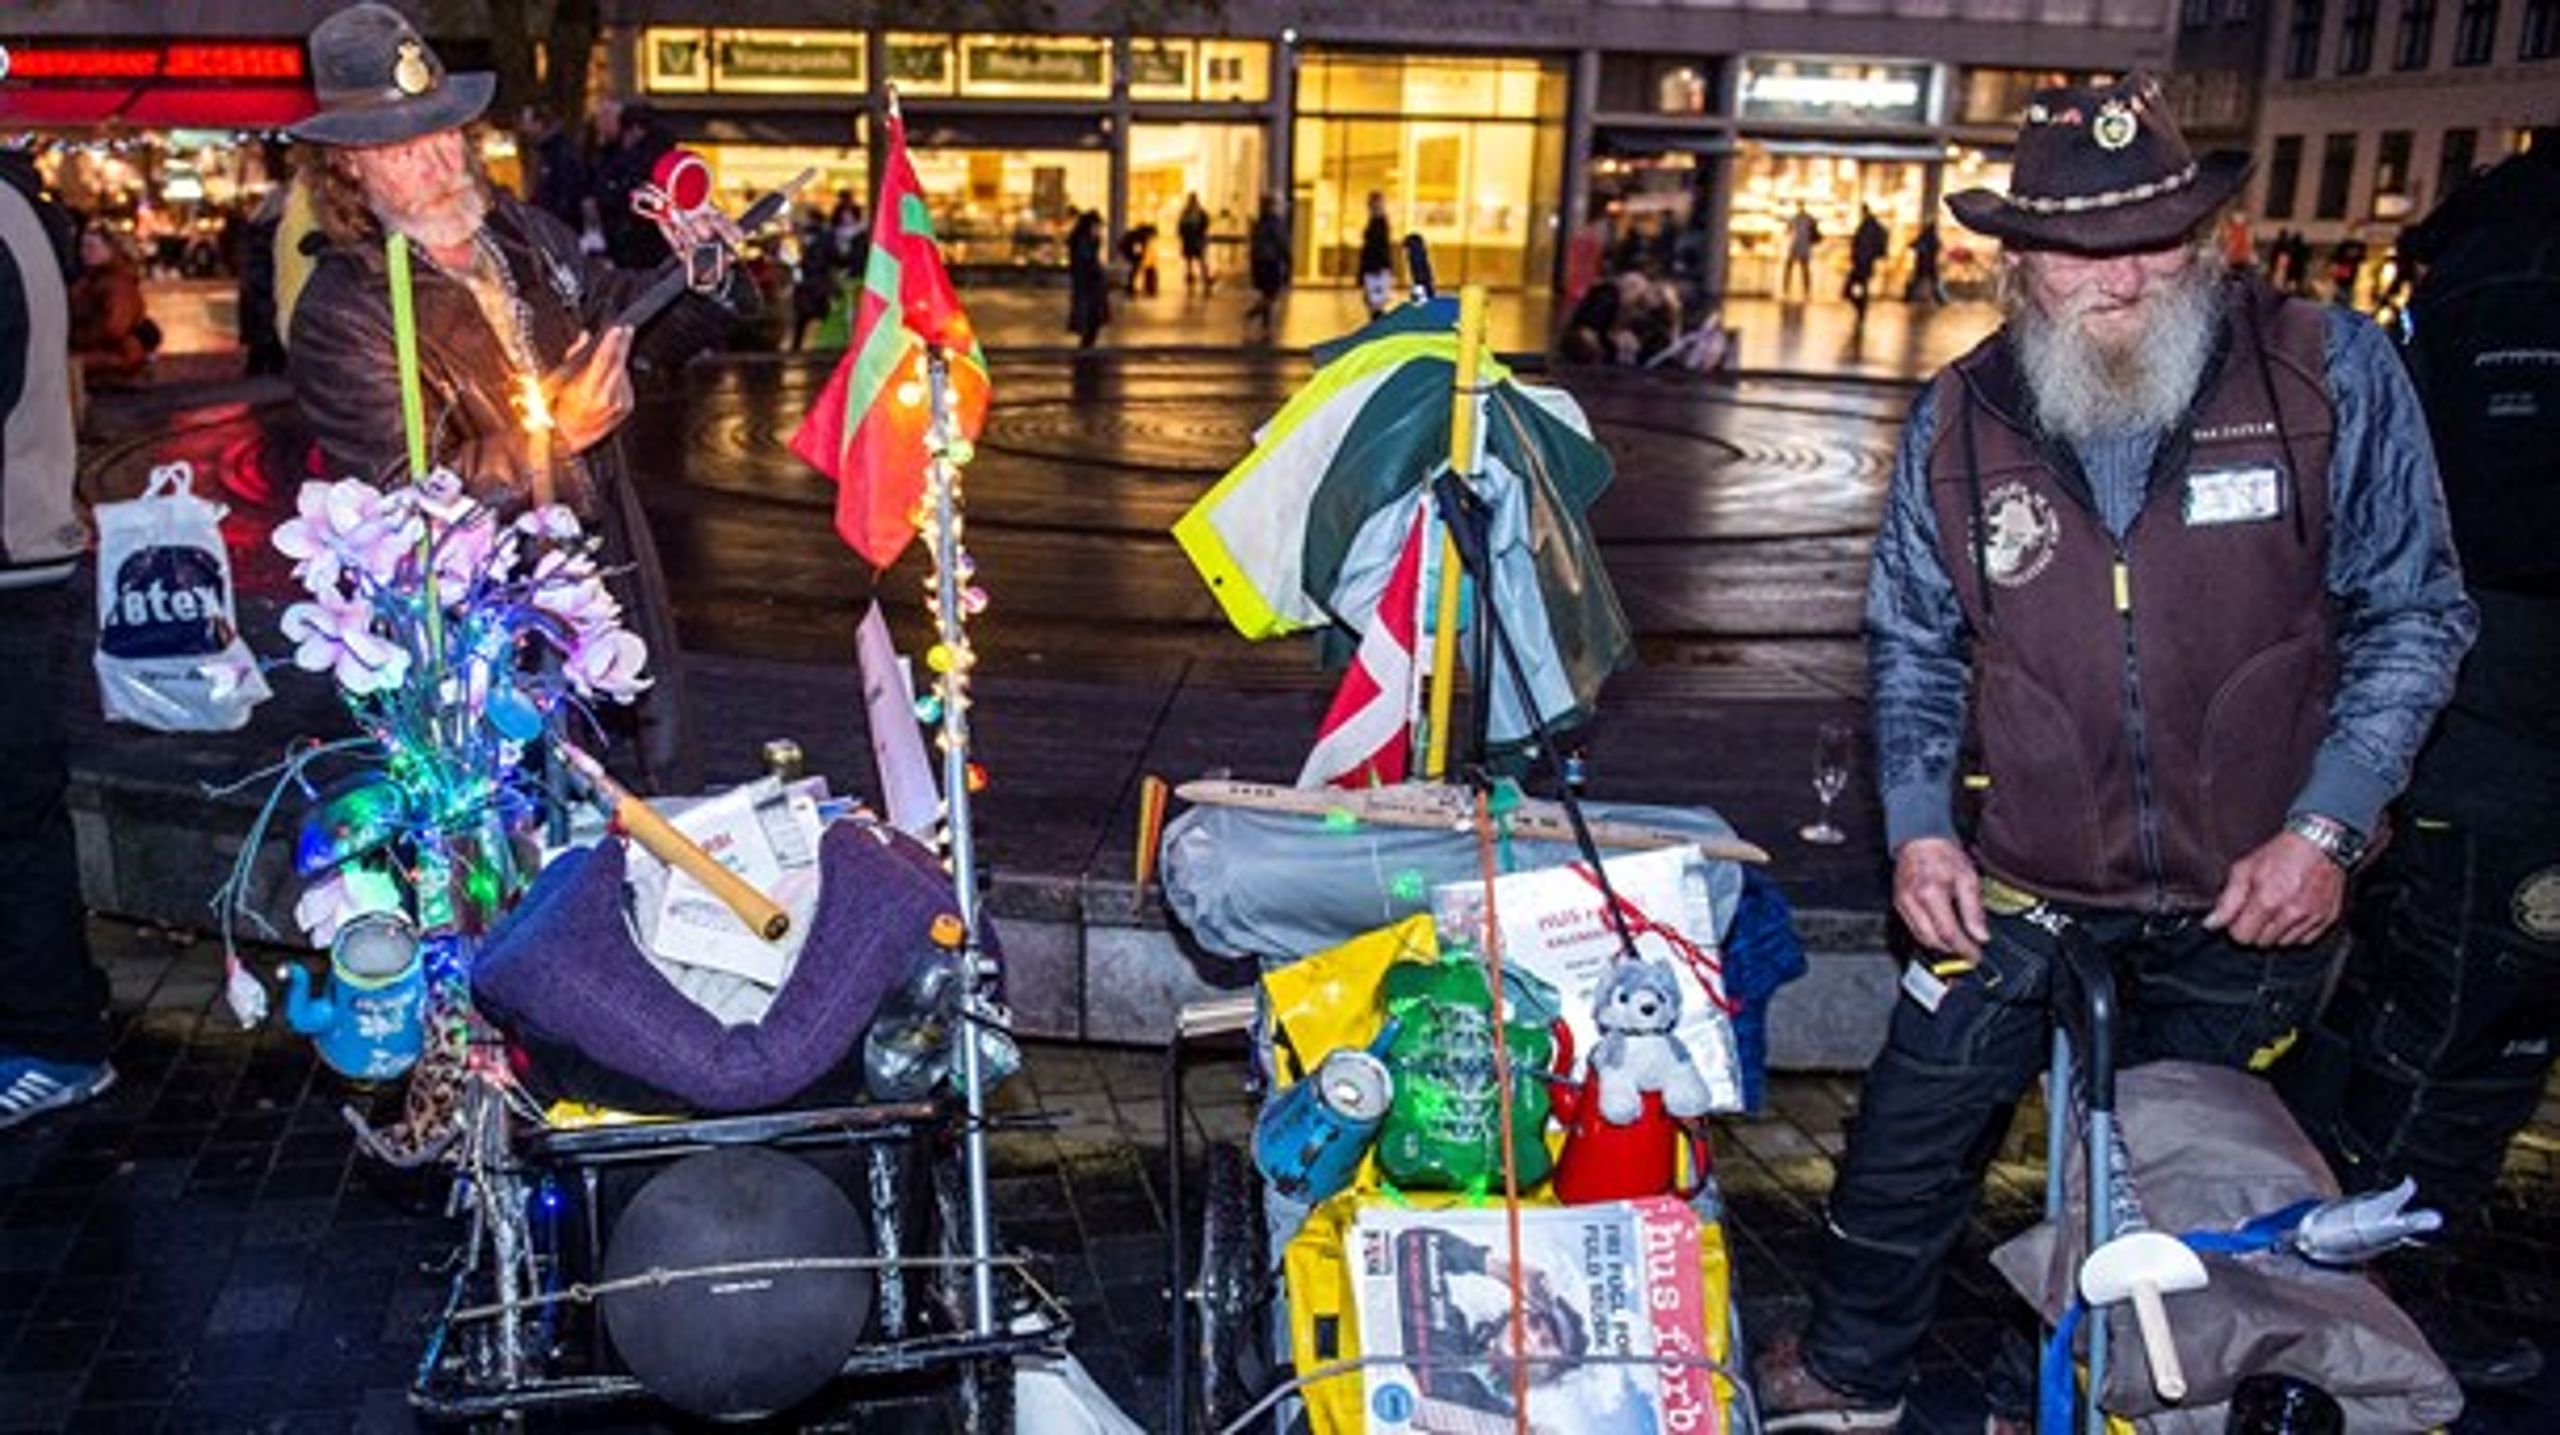 De hjemløses landsorganisation afholdt i november et fakkeloptog mod zoneforbuddet, der rammer hjemløse danskere. Regeringen sender ansvaret for hjemløse videre til kommunerne, som ikke lever op til deres opgave,&nbsp;mener SAND's sekretariatsleder.